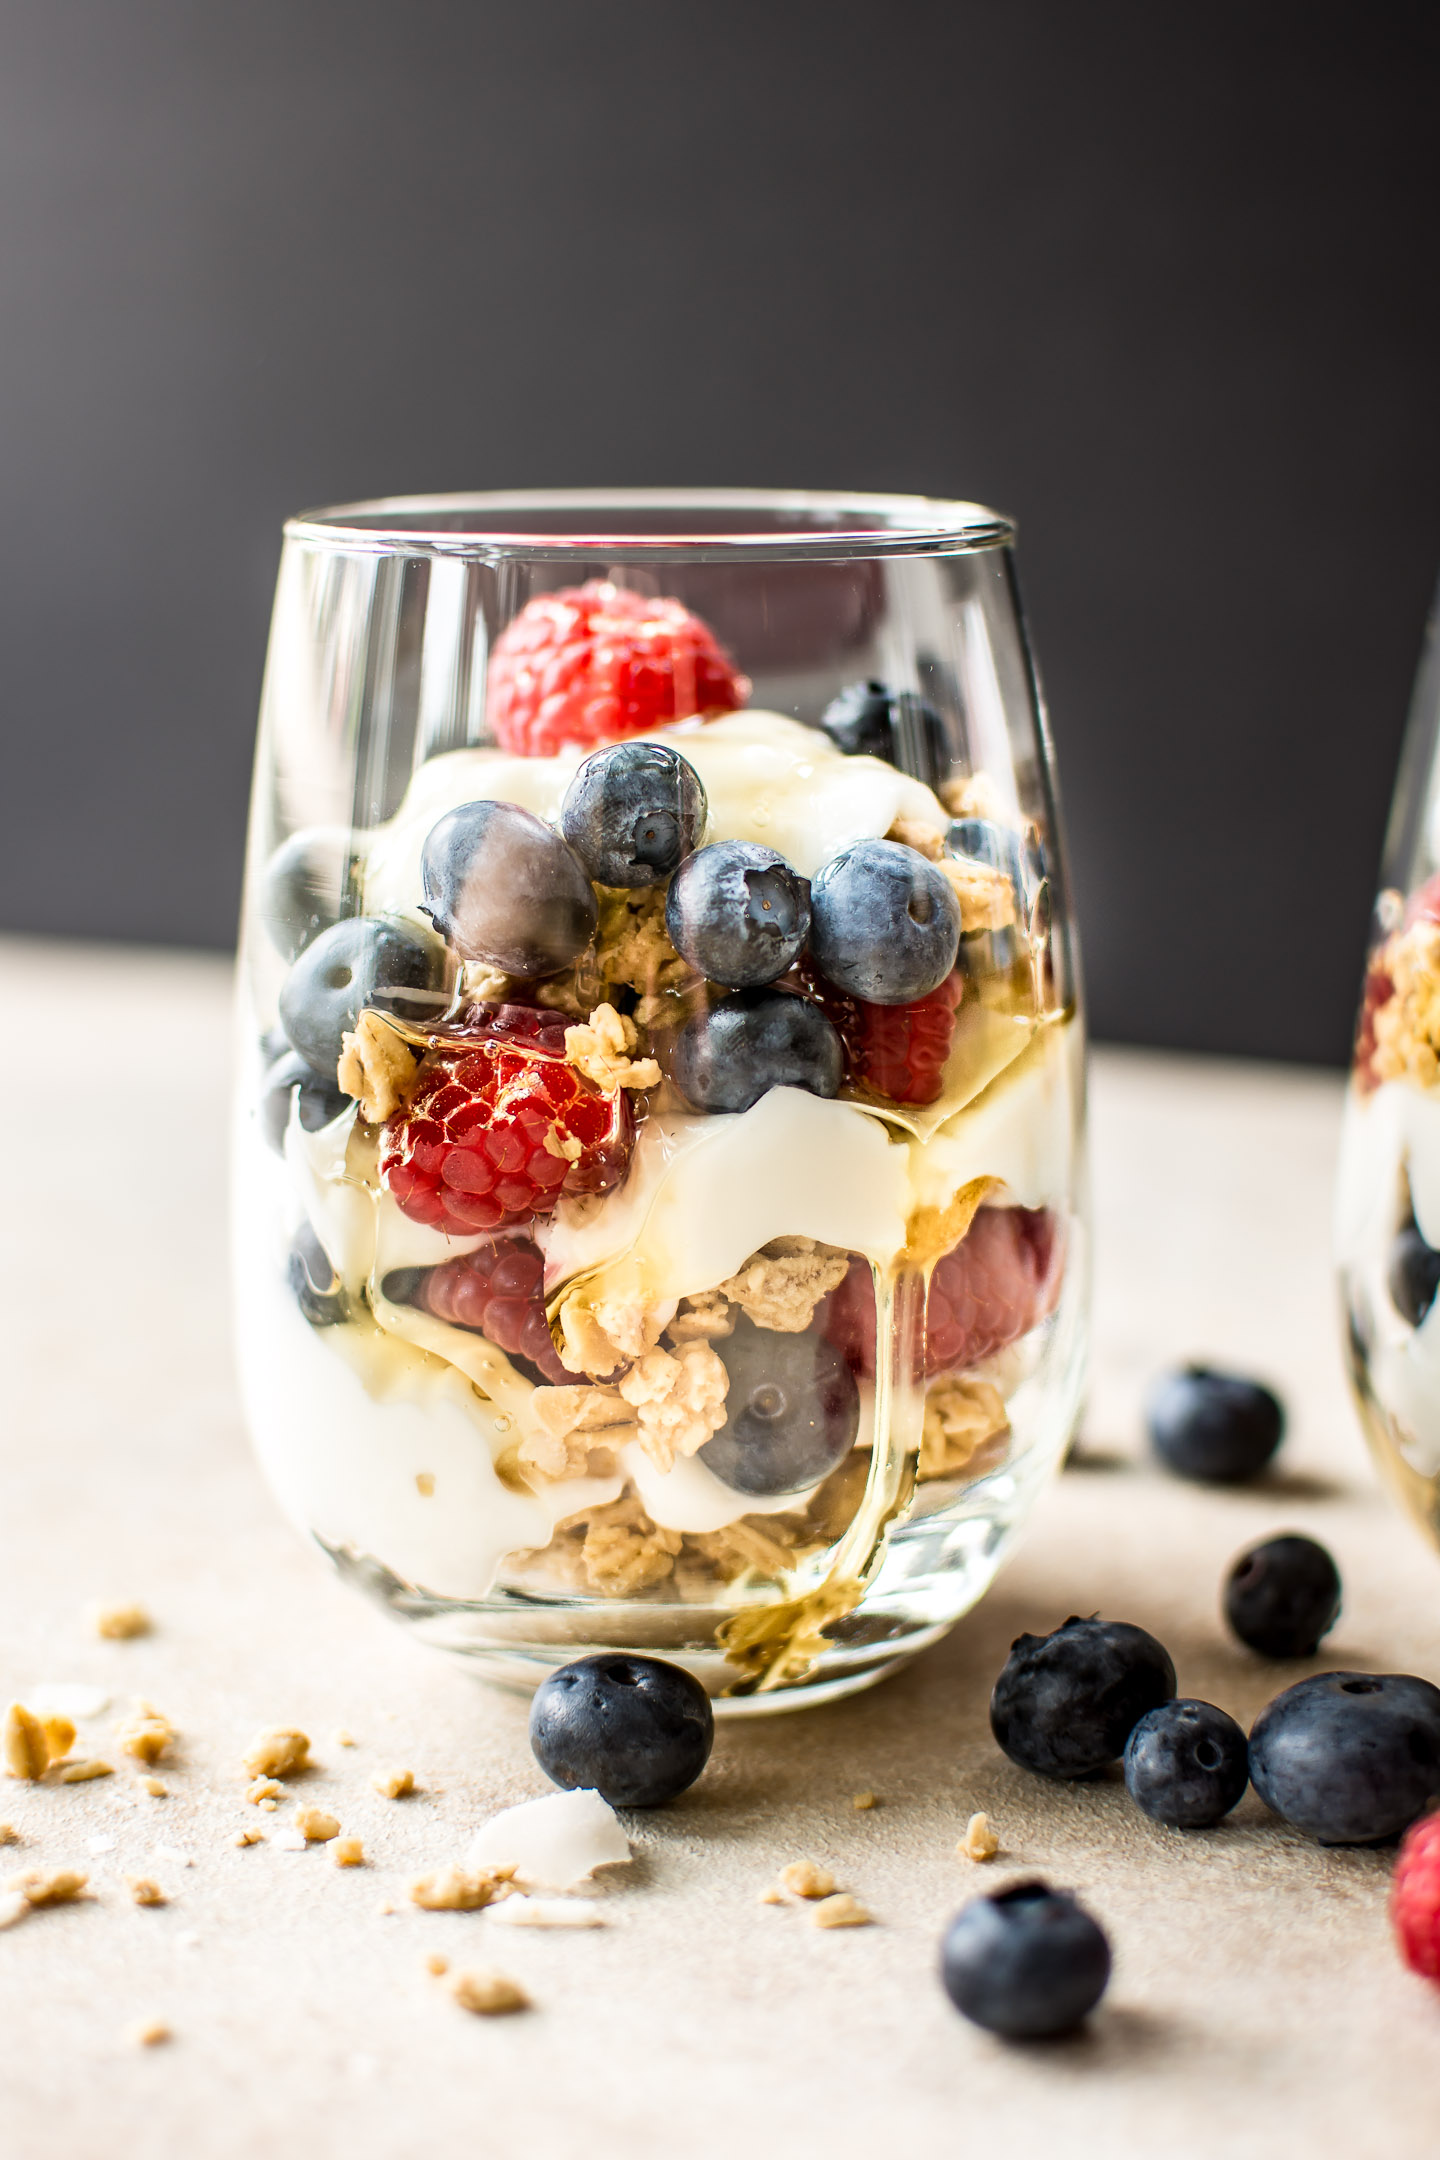 5 Make-Ahead Fruit & Greek Yogurt Parfait Ideas to Try for Breakfast